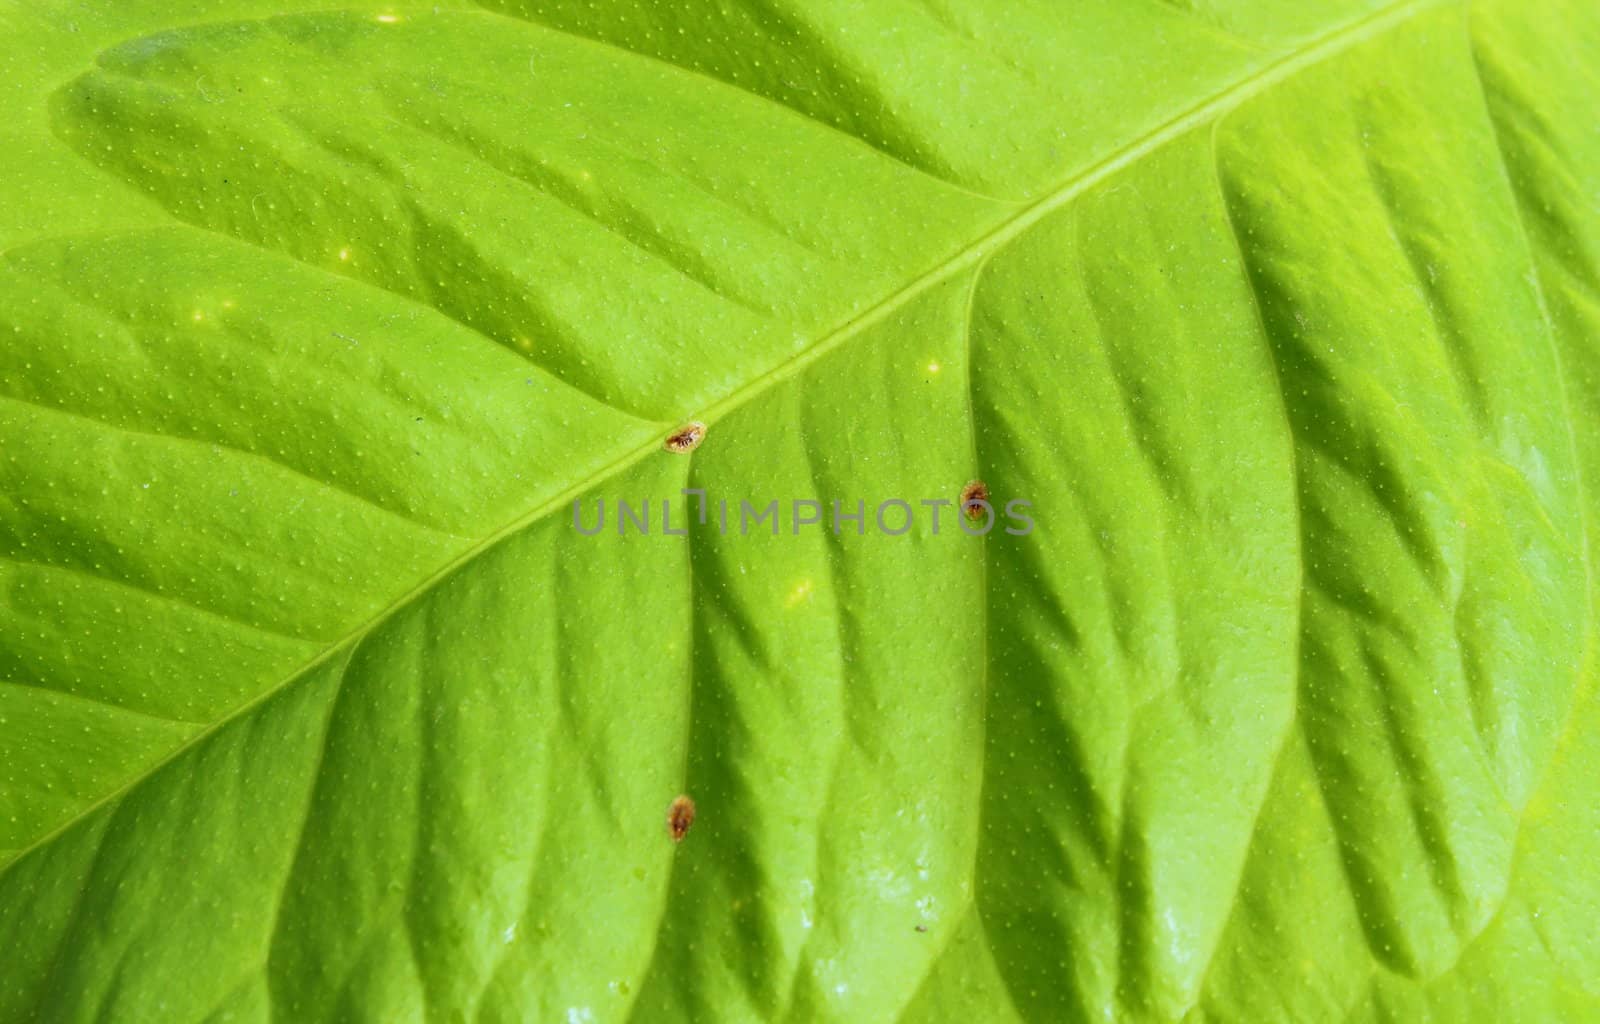 infested lemon leaf by taviphoto